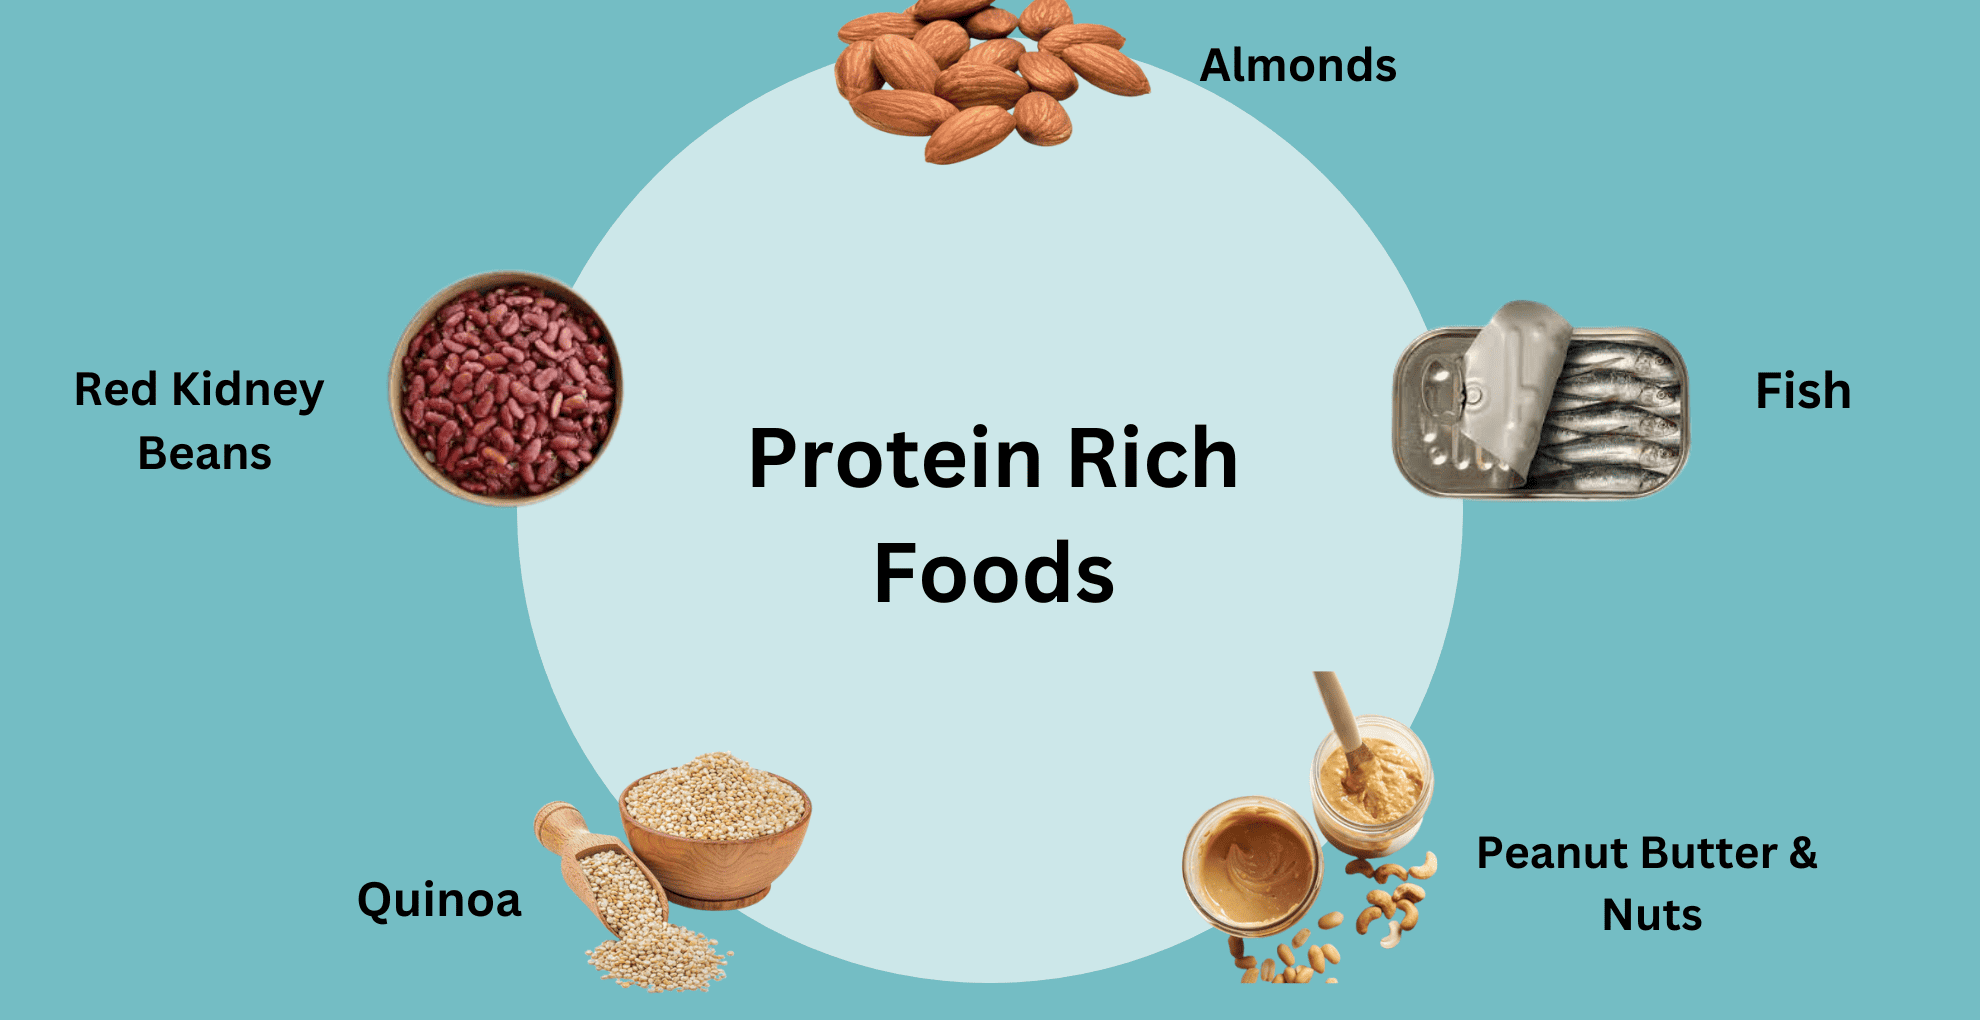 Protein-rich diets